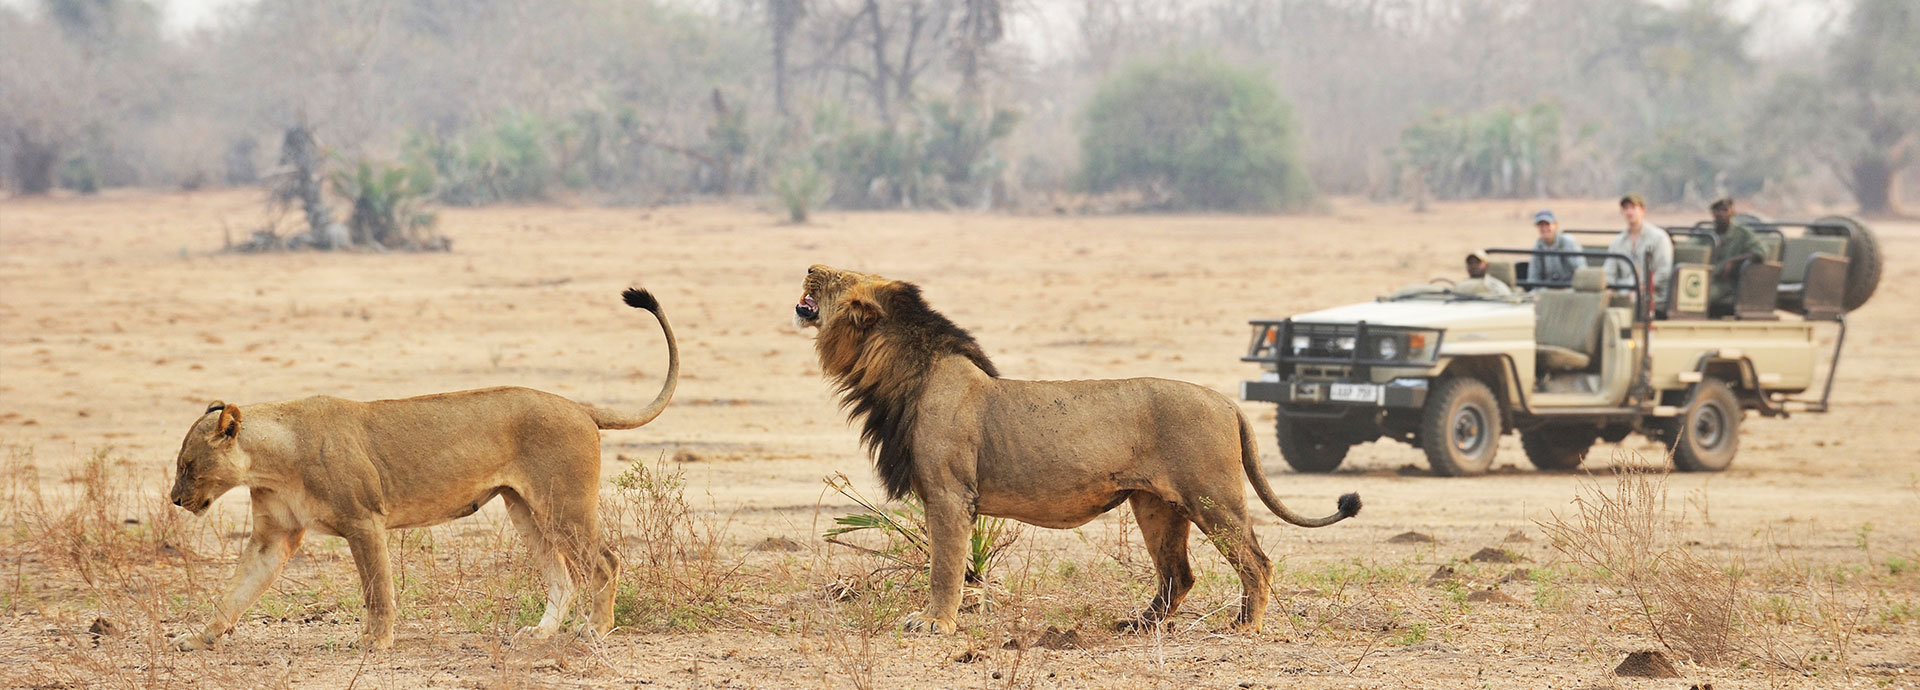 Lion on a game drive staying at Chiawa Camp in the lower Zambezi, Zambia